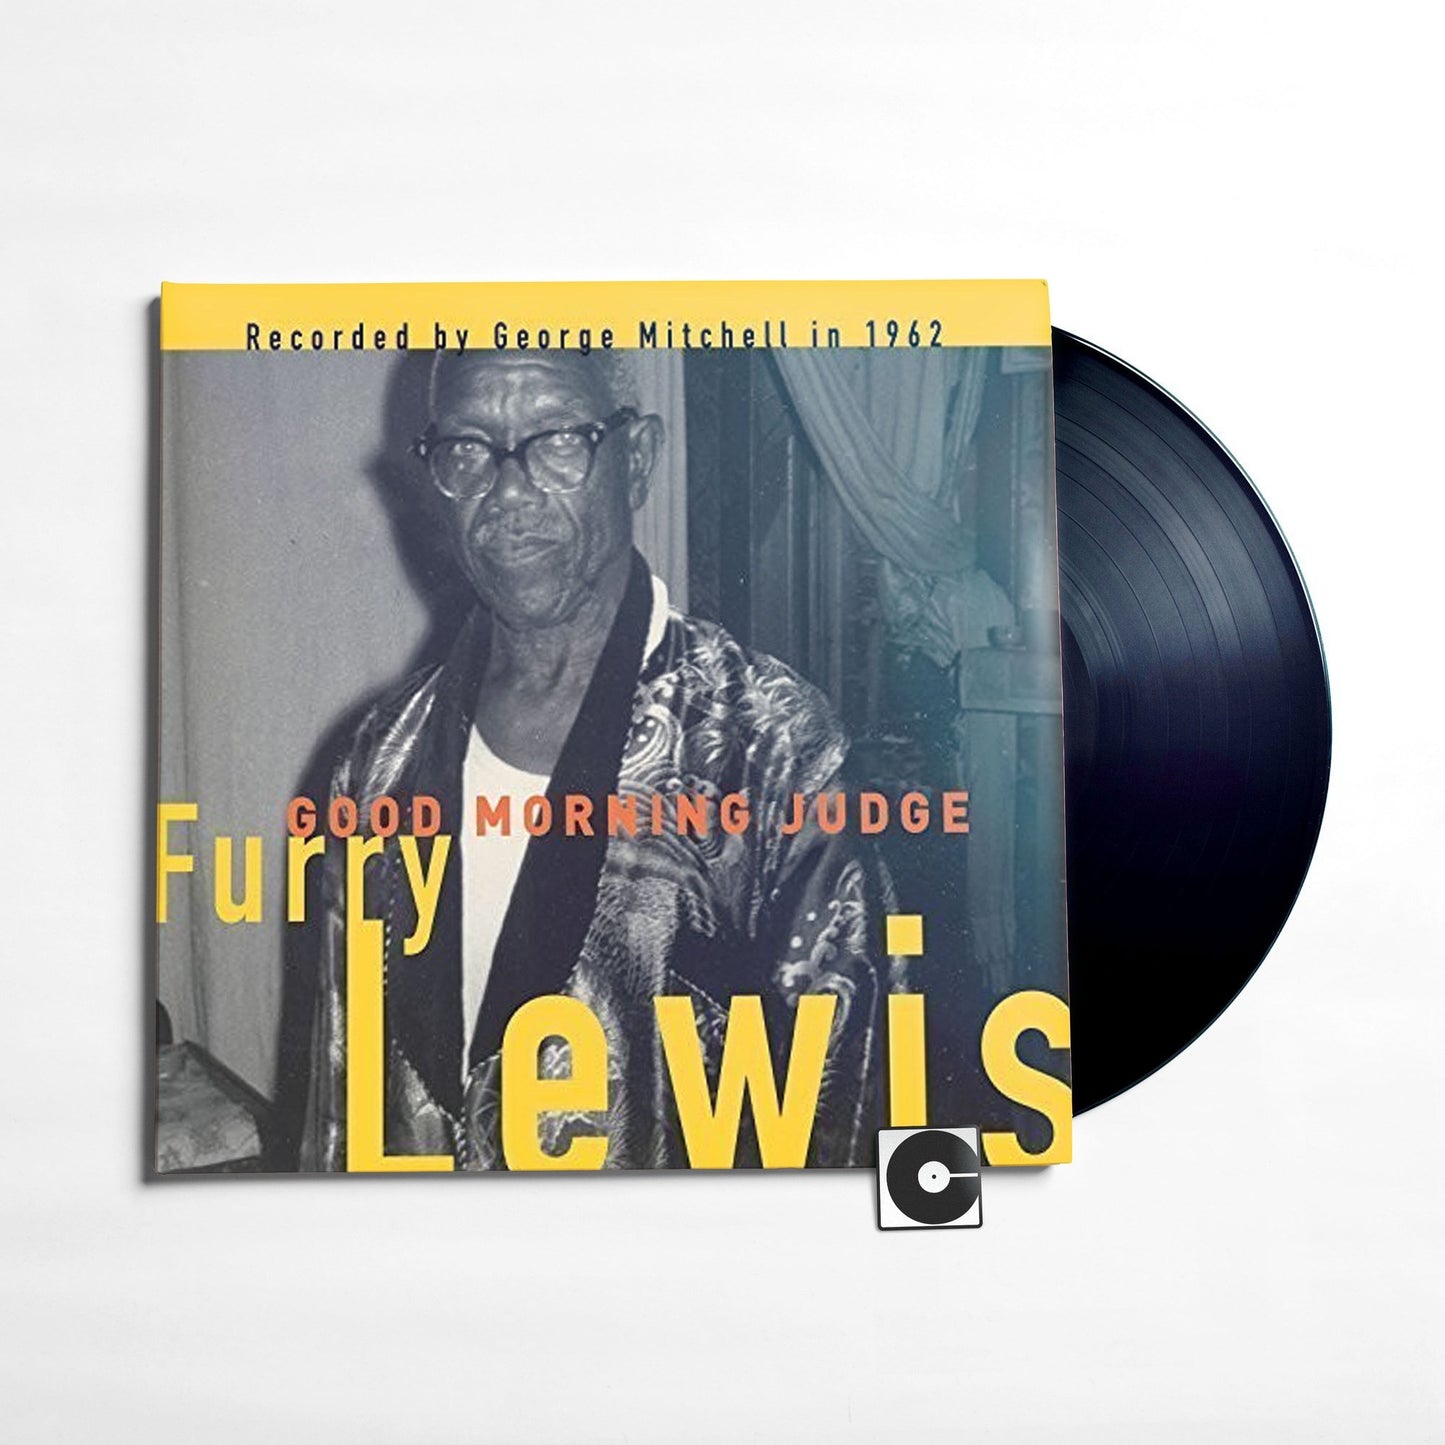 Furry Lewis - "Good Morning Judge"